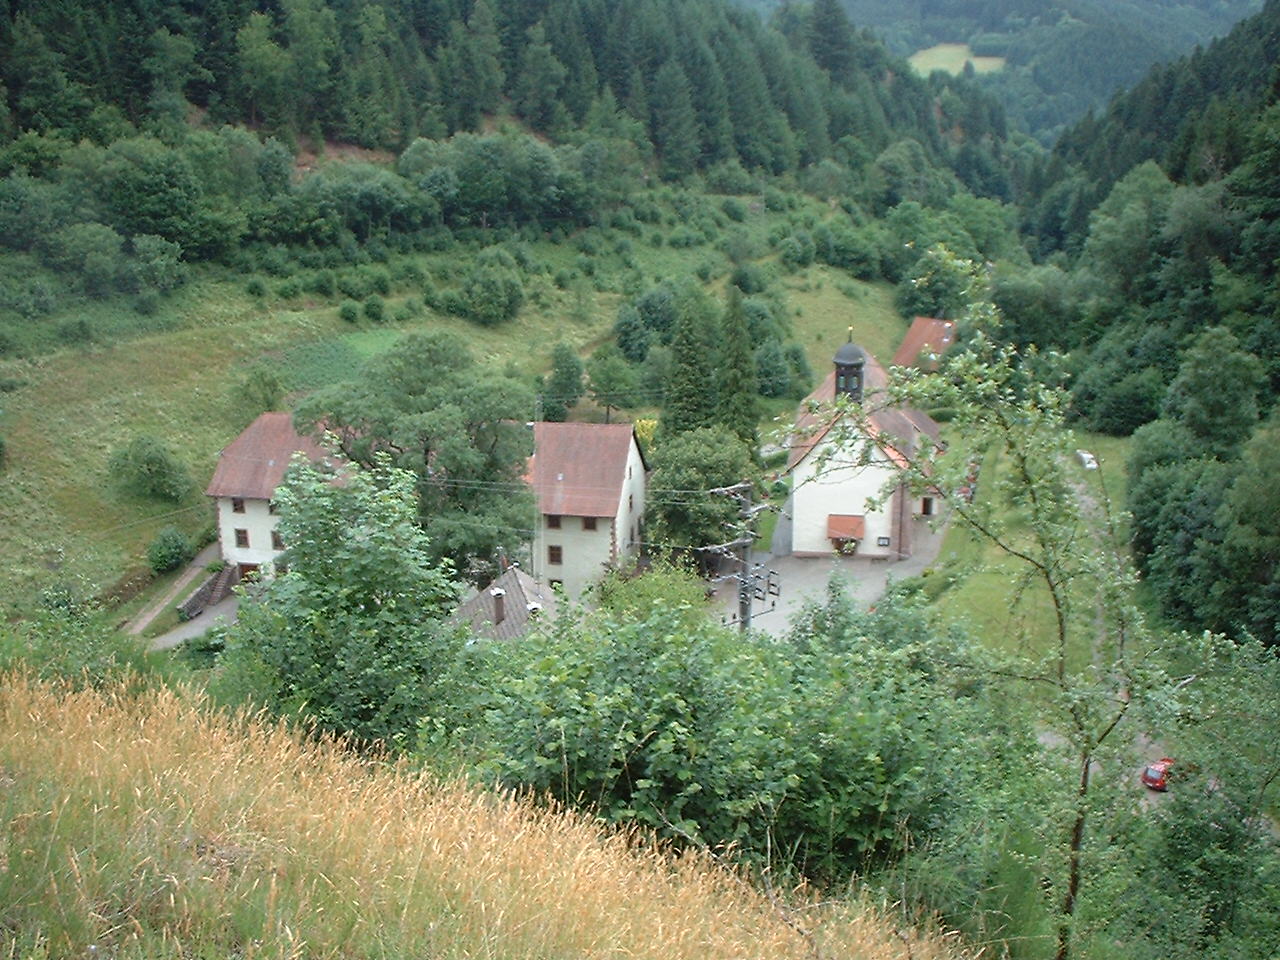 Kloster Wittichen heute